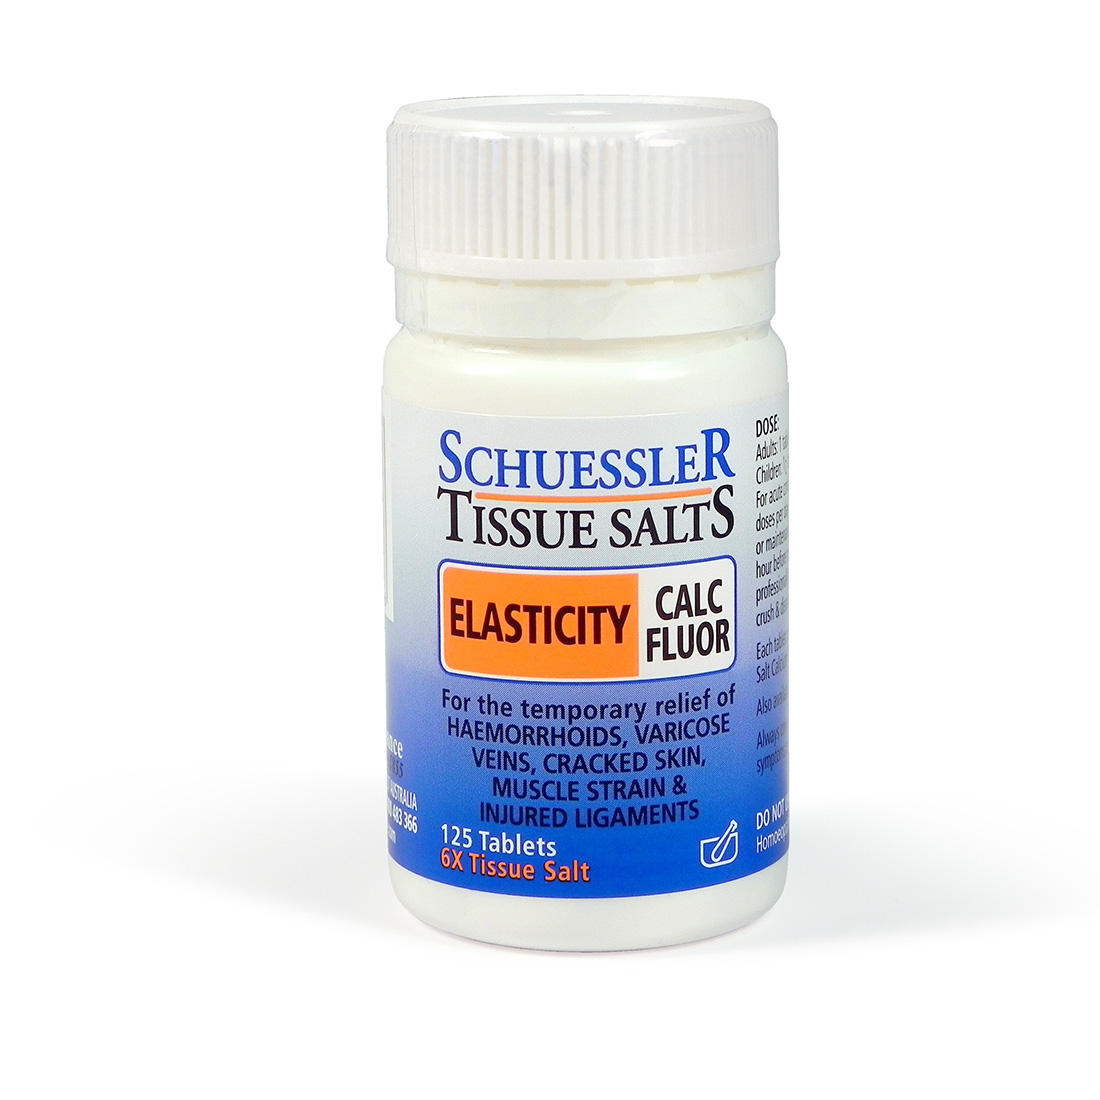 Dr Schuessler Tissue Salt Calc Fluor 6X T/Salt 125tab